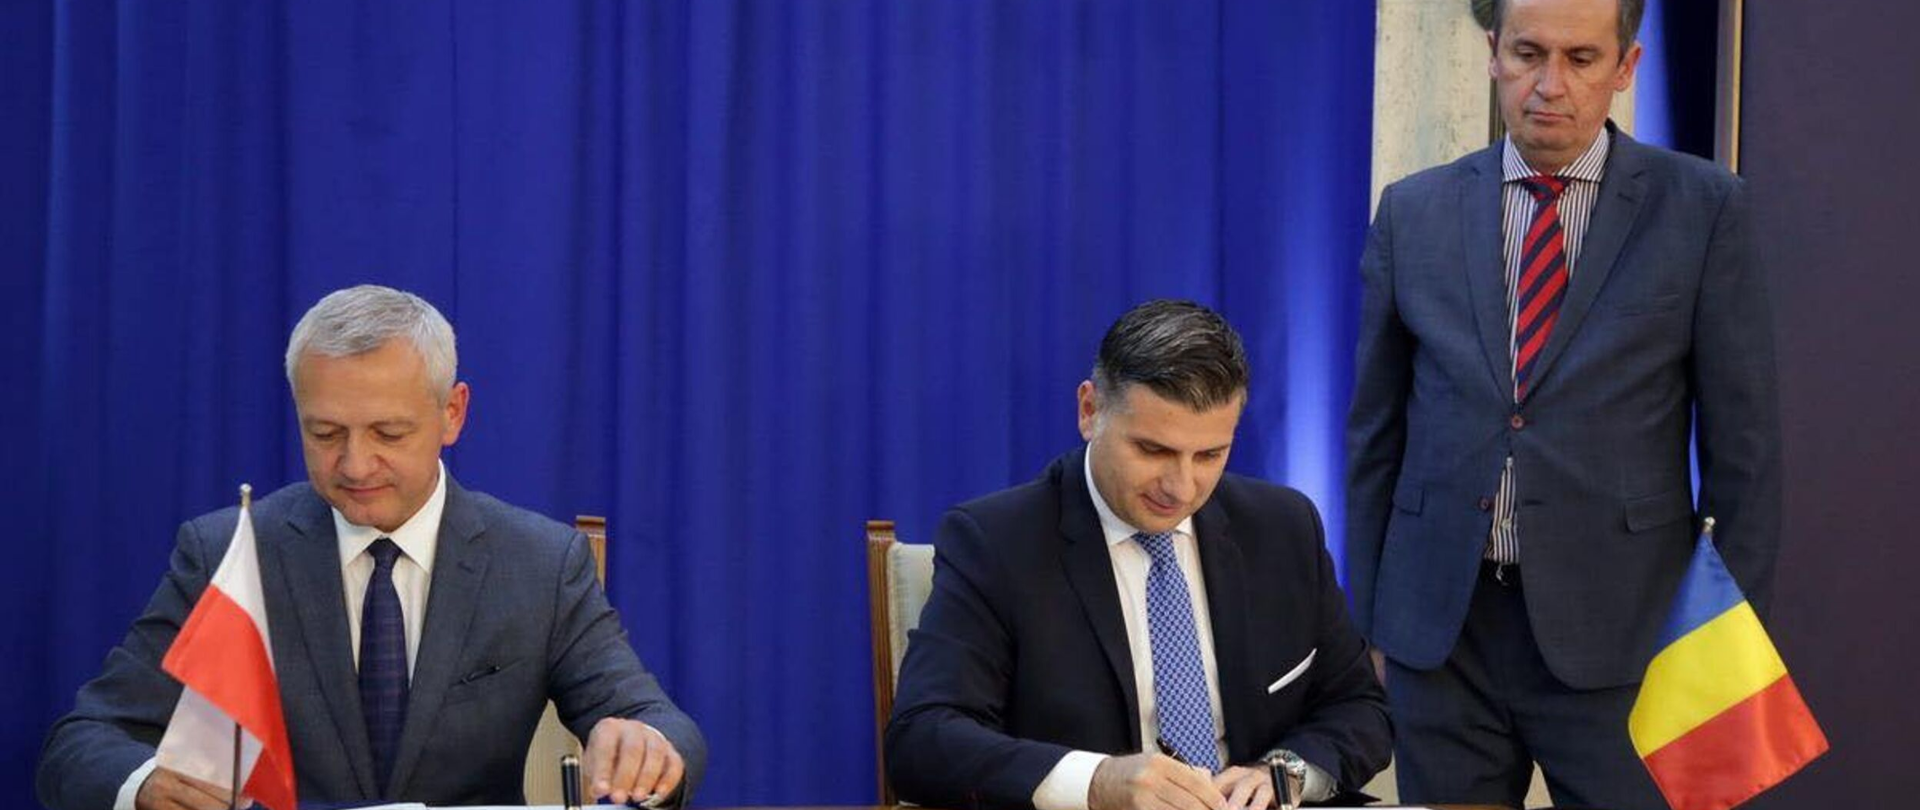 Dwóch ministrów siedzi przy stole i podpisuje dokumenty. Na blacie stoją mini flagi Polski i Rumunii. Obok stołu stoi inny mężczyzna